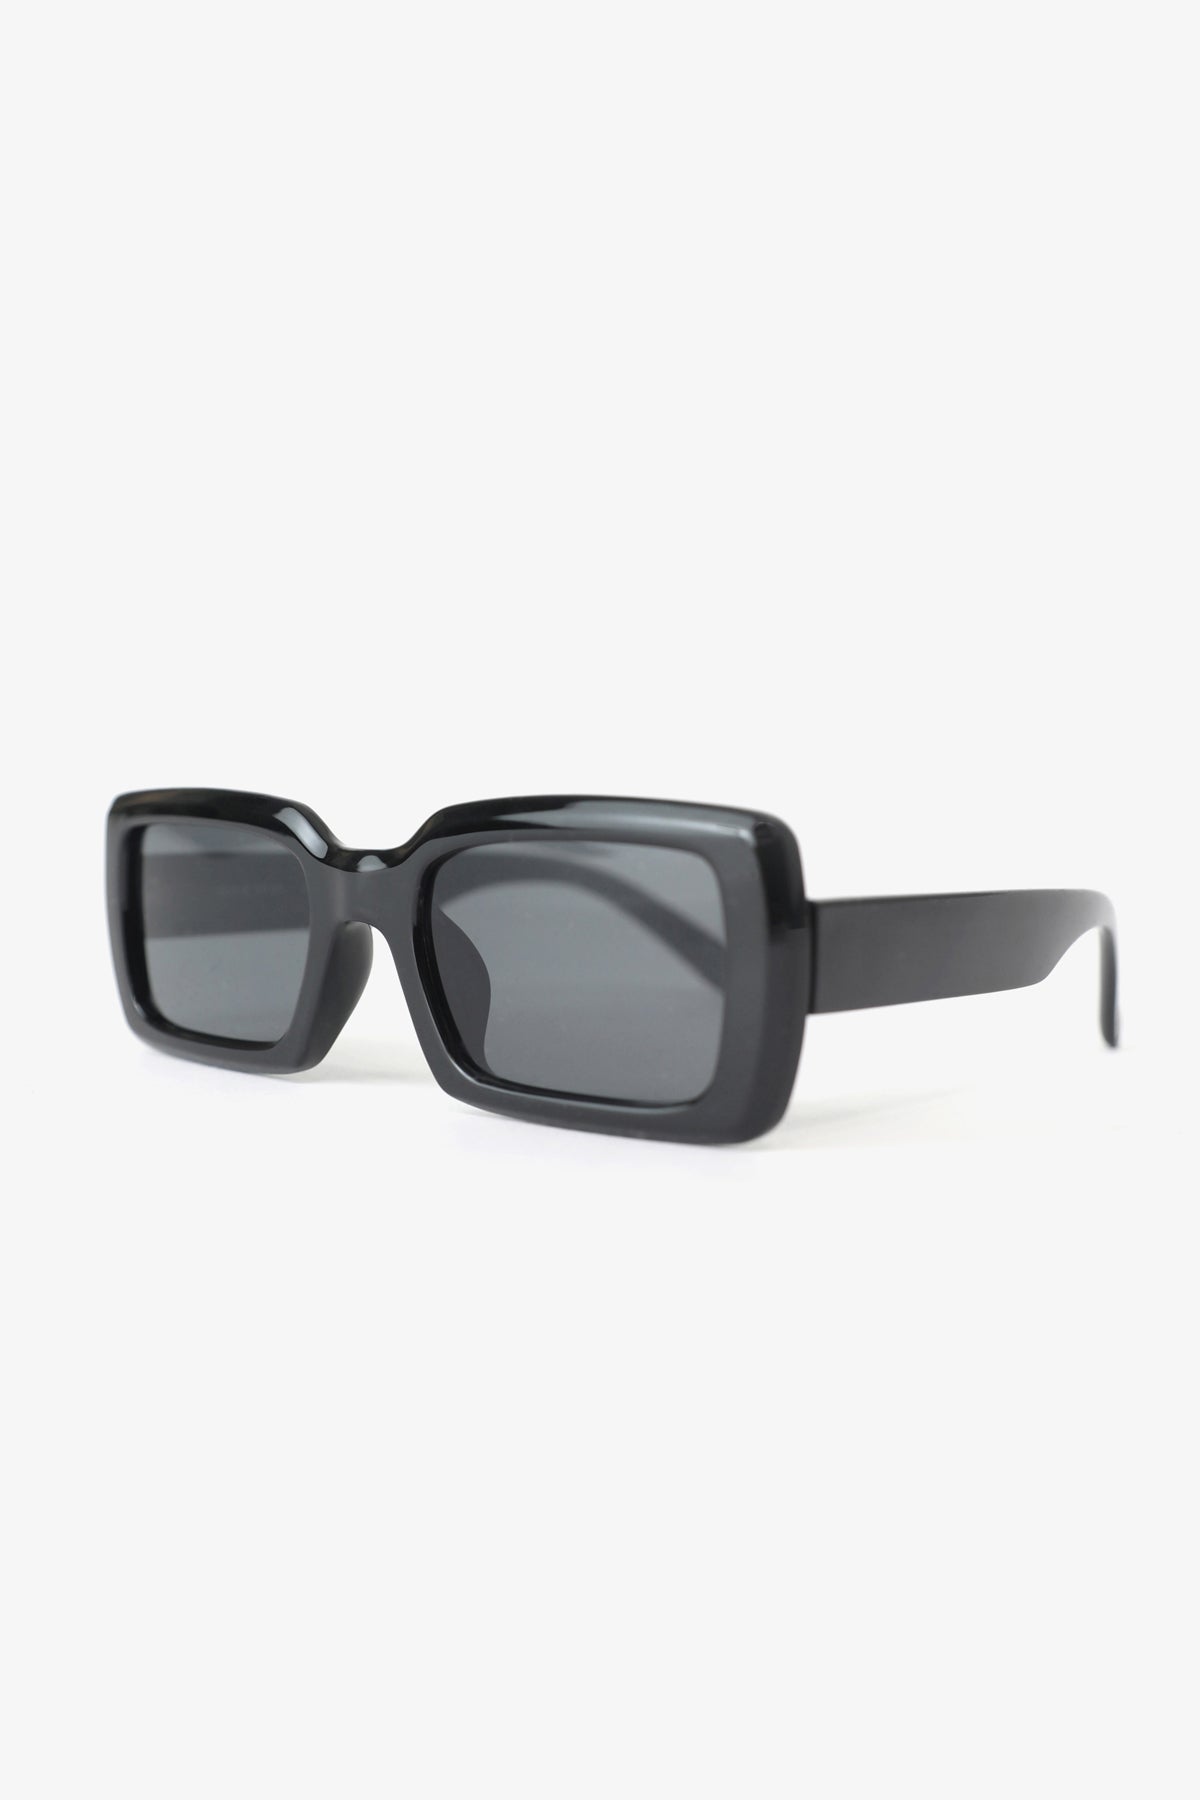 The Ali black square sunglasses.